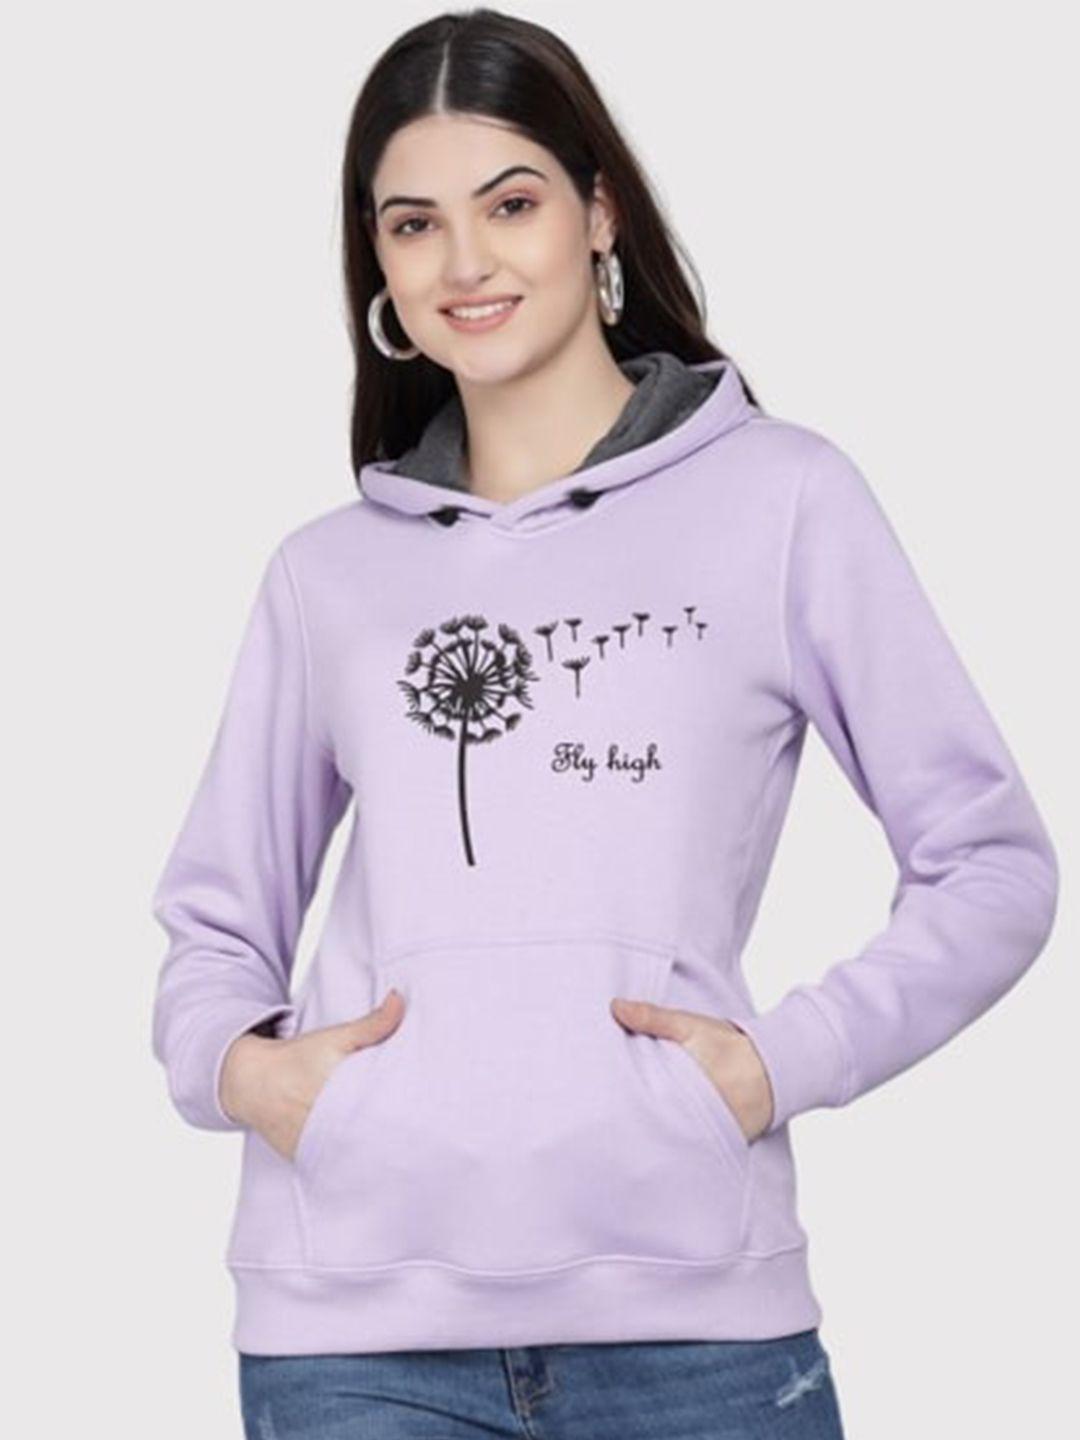 pockman women lavender printed hooded sweatshirt